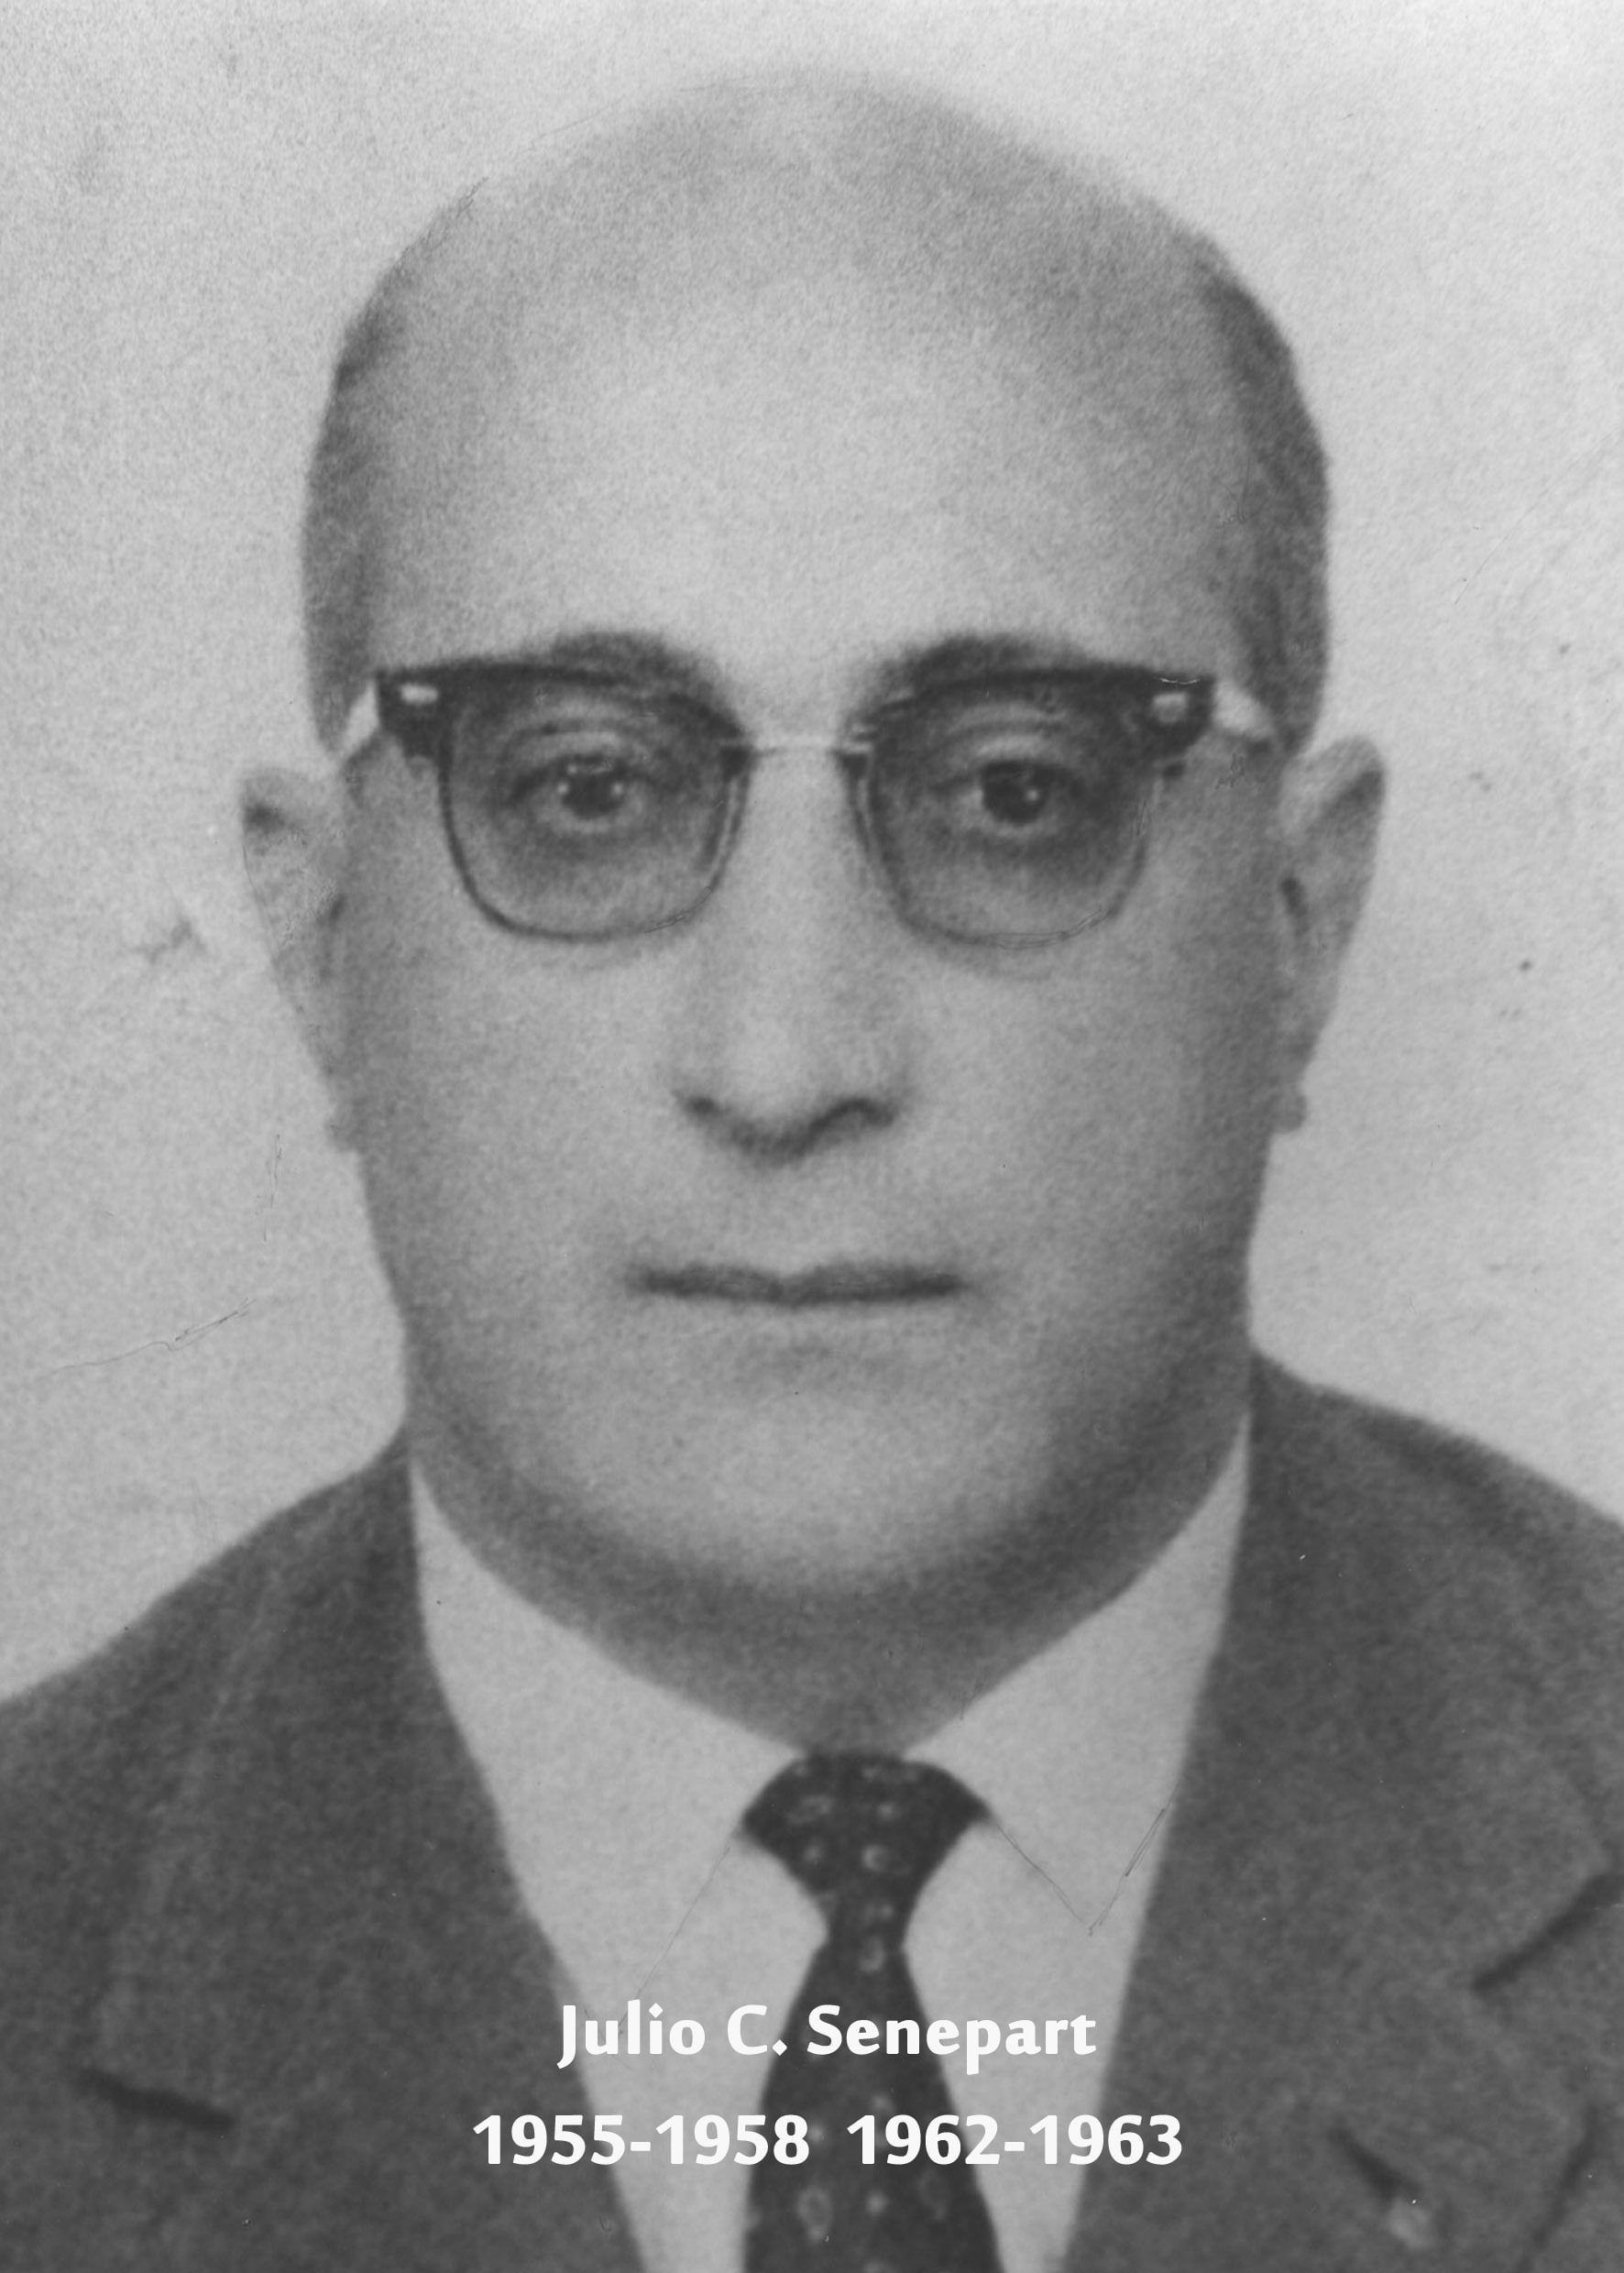 JULIO CARLOS SENEPART